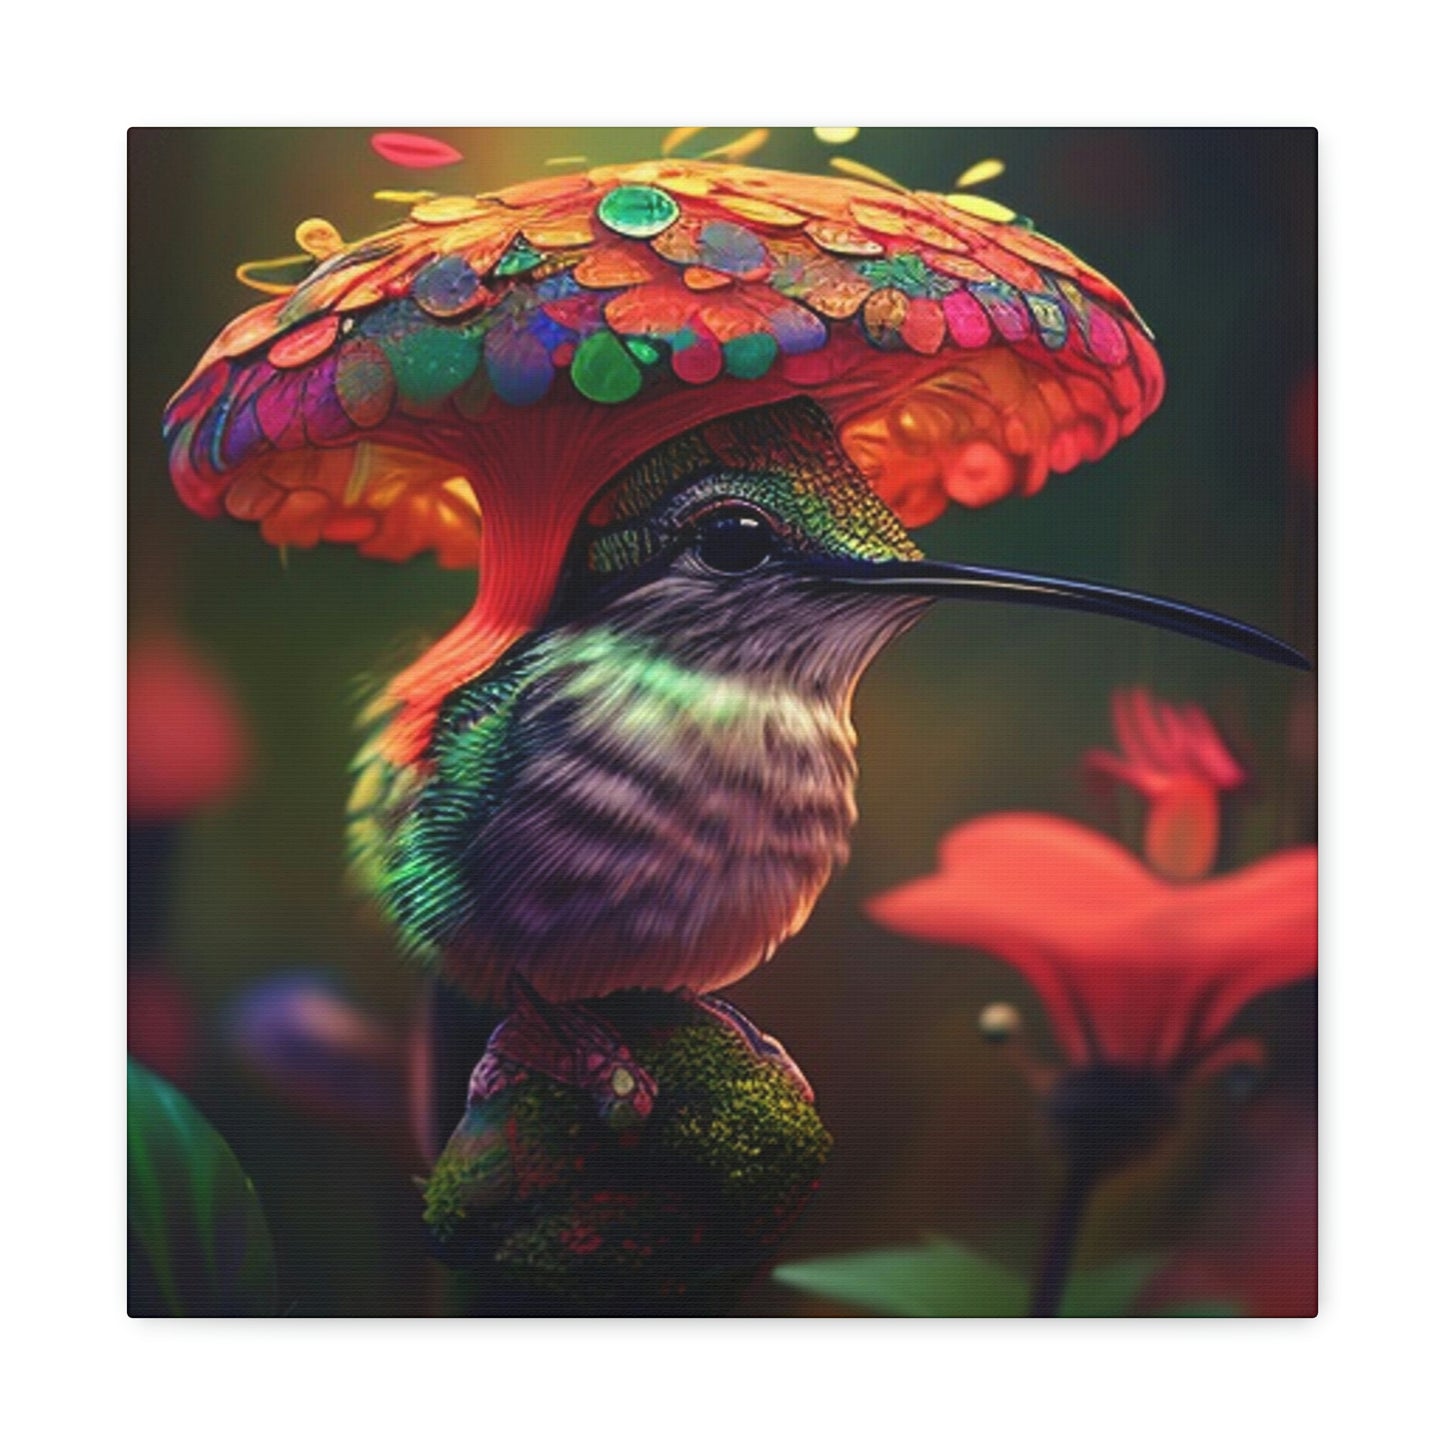 Hummingbird mushroom 3